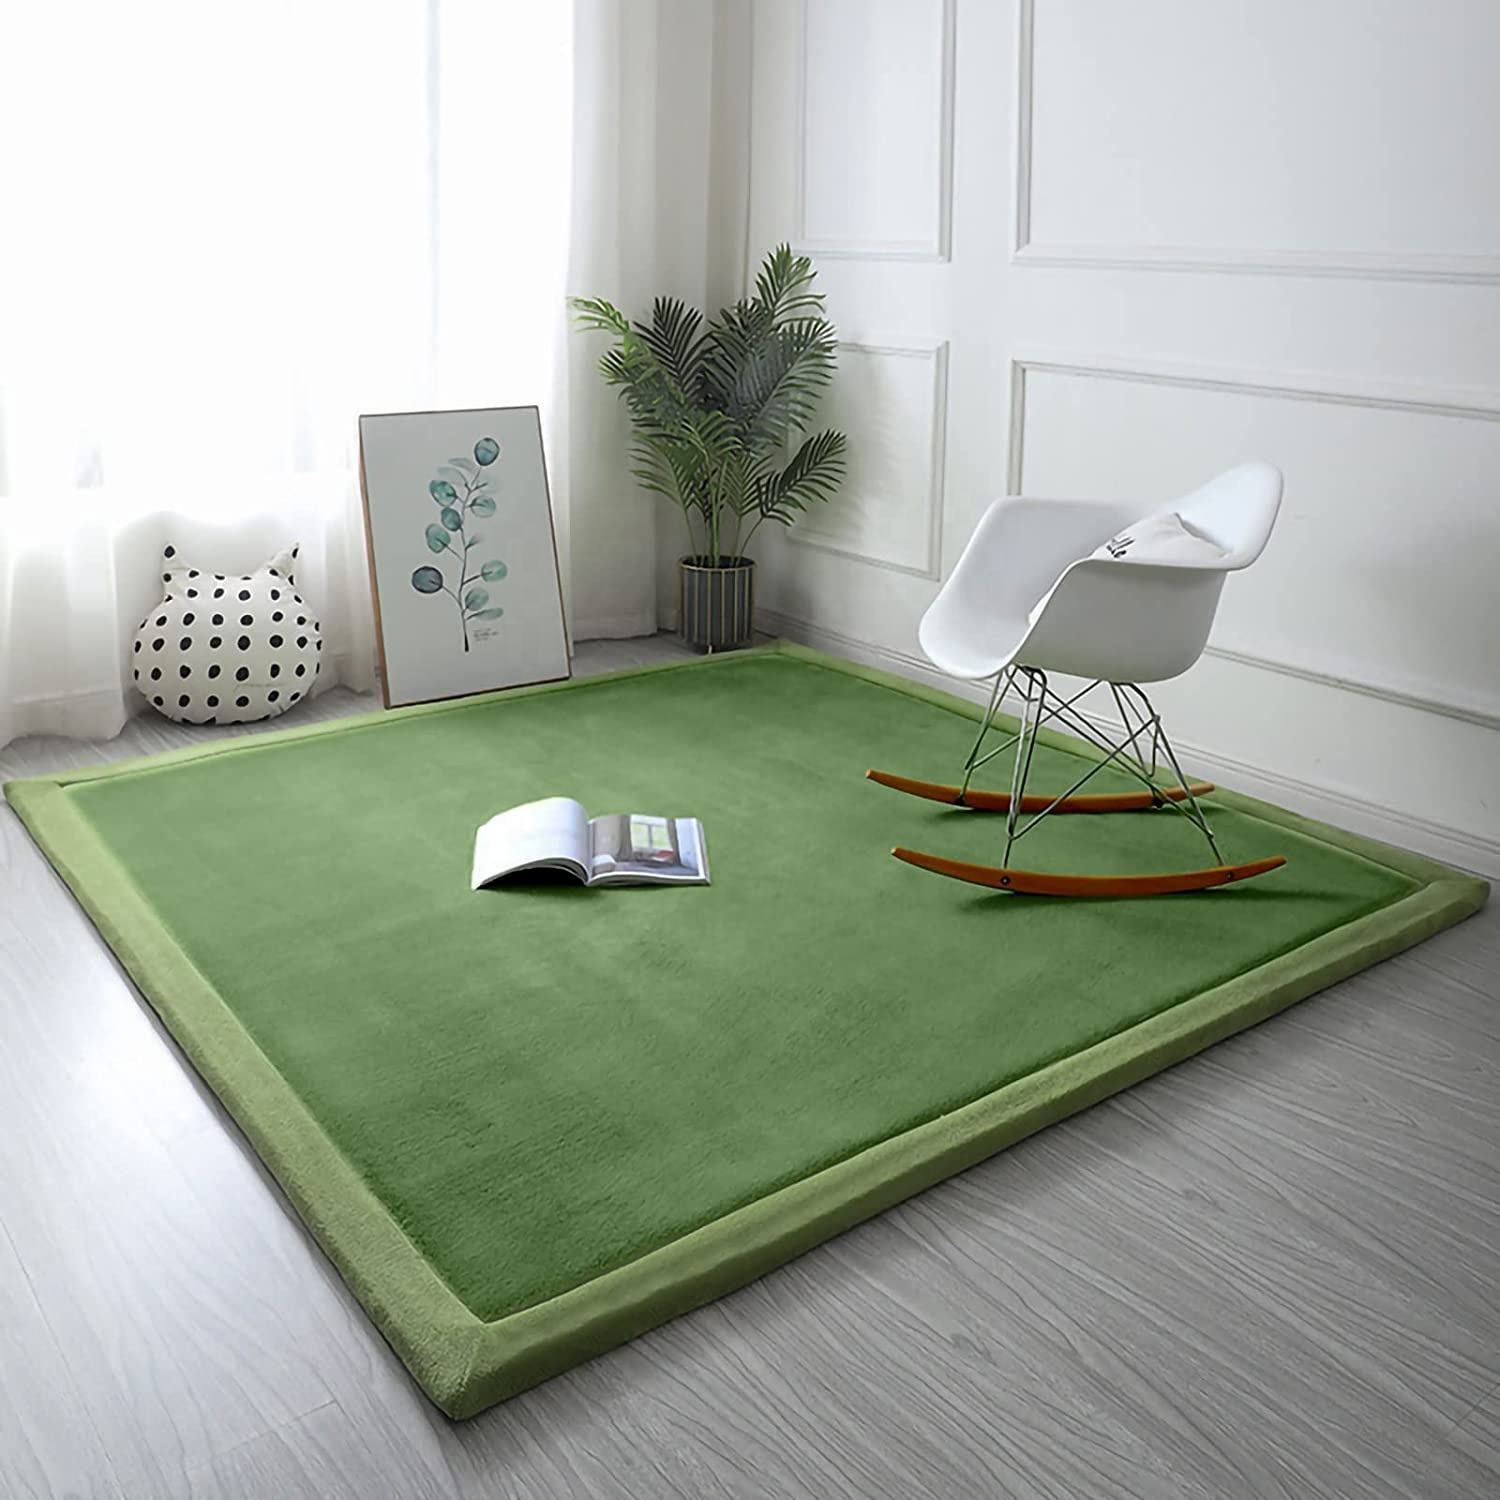 Floor Carpet For Home016